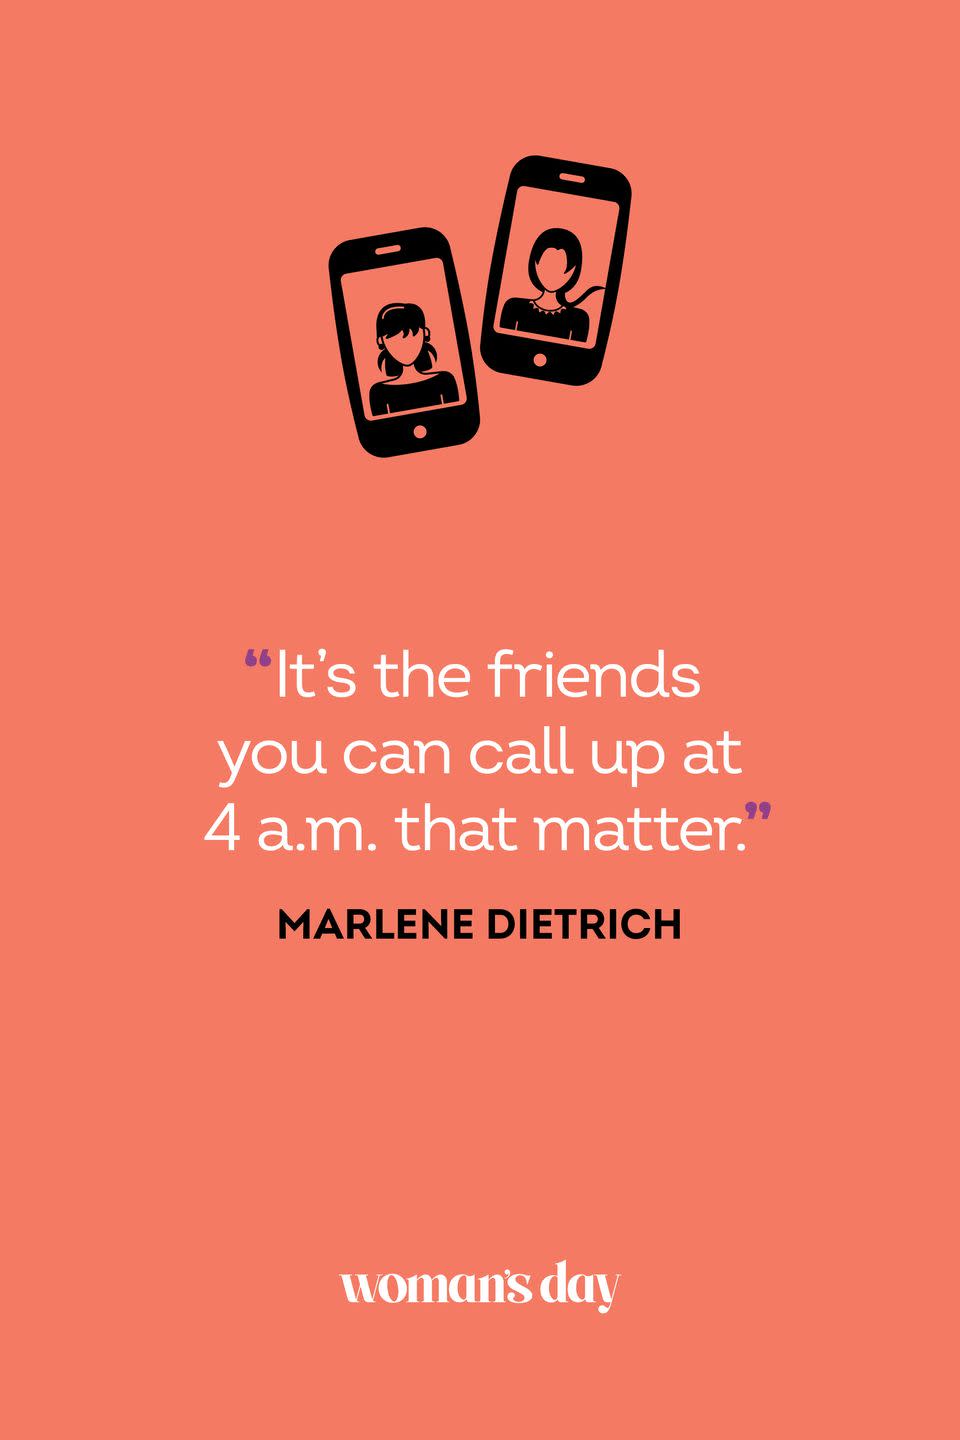 <p>“It’s the friends you can call up at 4 a.m. that matter.”</p>